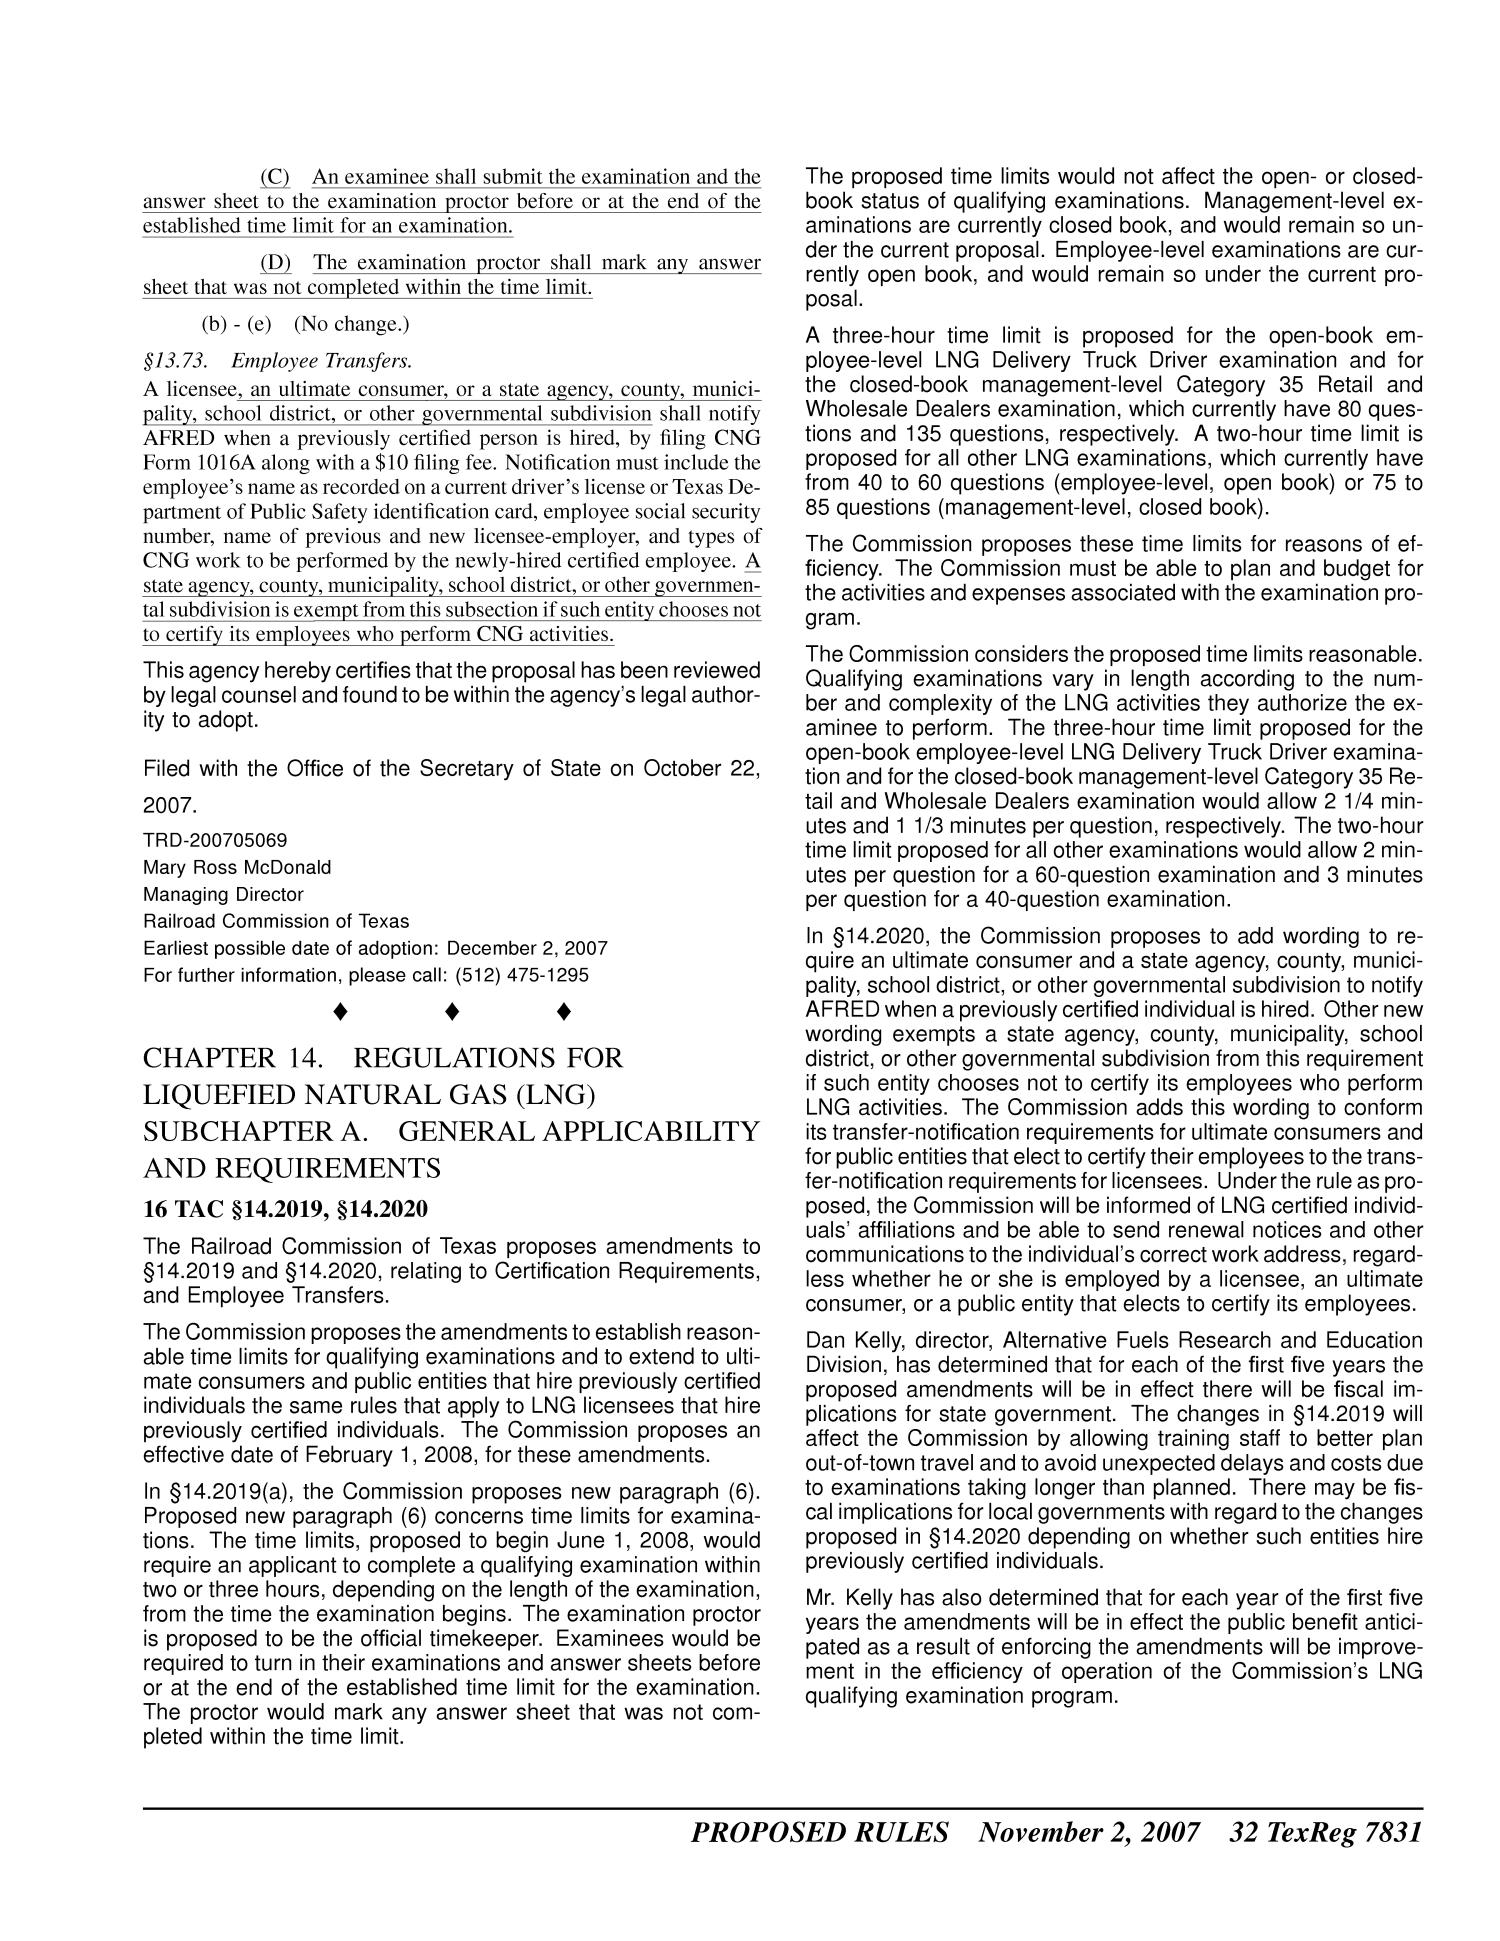 Texas Register, Volume 32, Number 44, Pages 7777-8060, November 2, 2007
                                                
                                                    7831
                                                